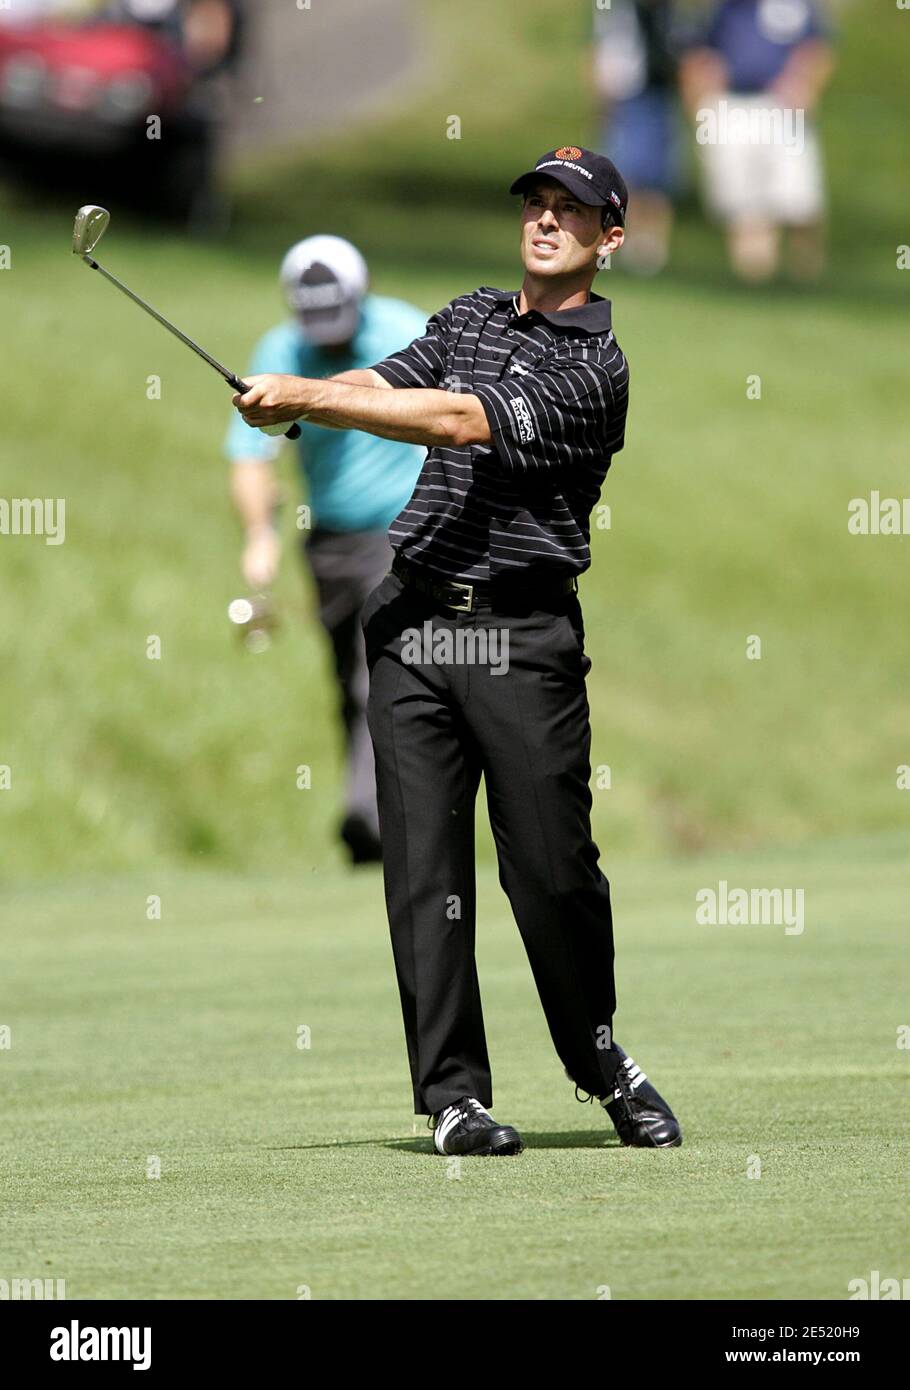 Mike Weir in azione durante l'ultimo round del Memorial Tournament al Muirfield Village Golf Club di Dublino, Ohio, USA, il 1° giugno 2008. Foto di Scott Terna/Cal Sport Media/Cameleon/ABACAPRESS.COM Foto Stock